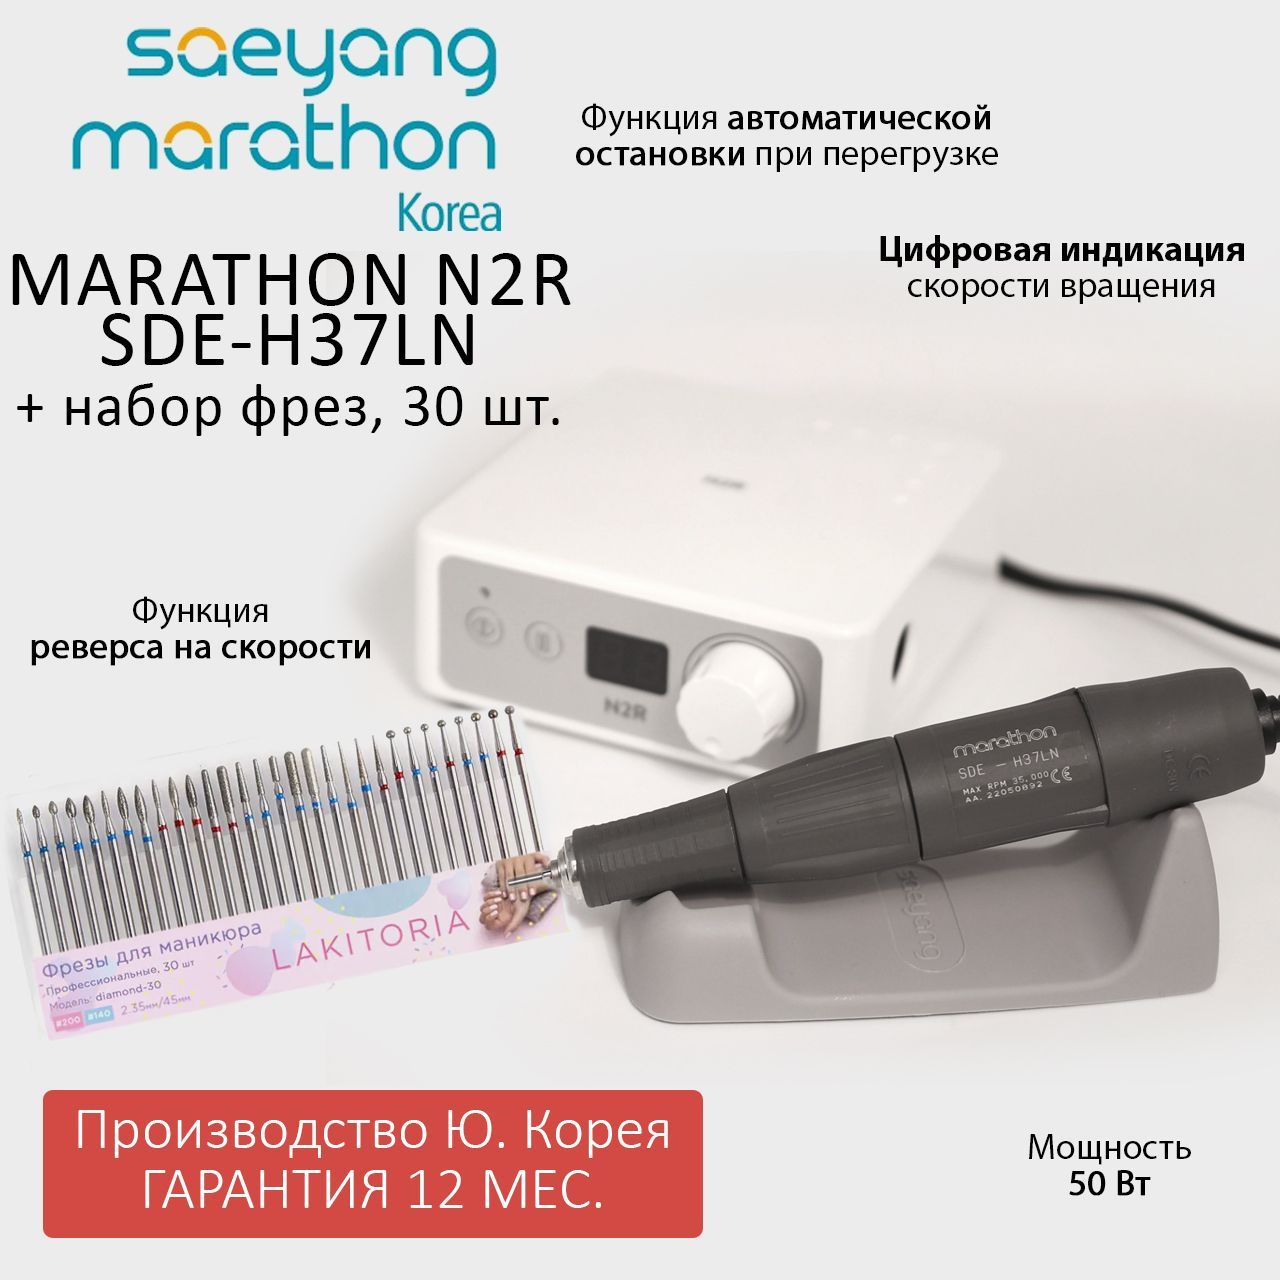 Аппарат для маникюра Marathon N2R SDE-H37LN без педали и набор фрез для маникюра 30шт 30шт белый пластик нейлон переключатель безель клип для toyota lexus ct200h gs350 gs450h